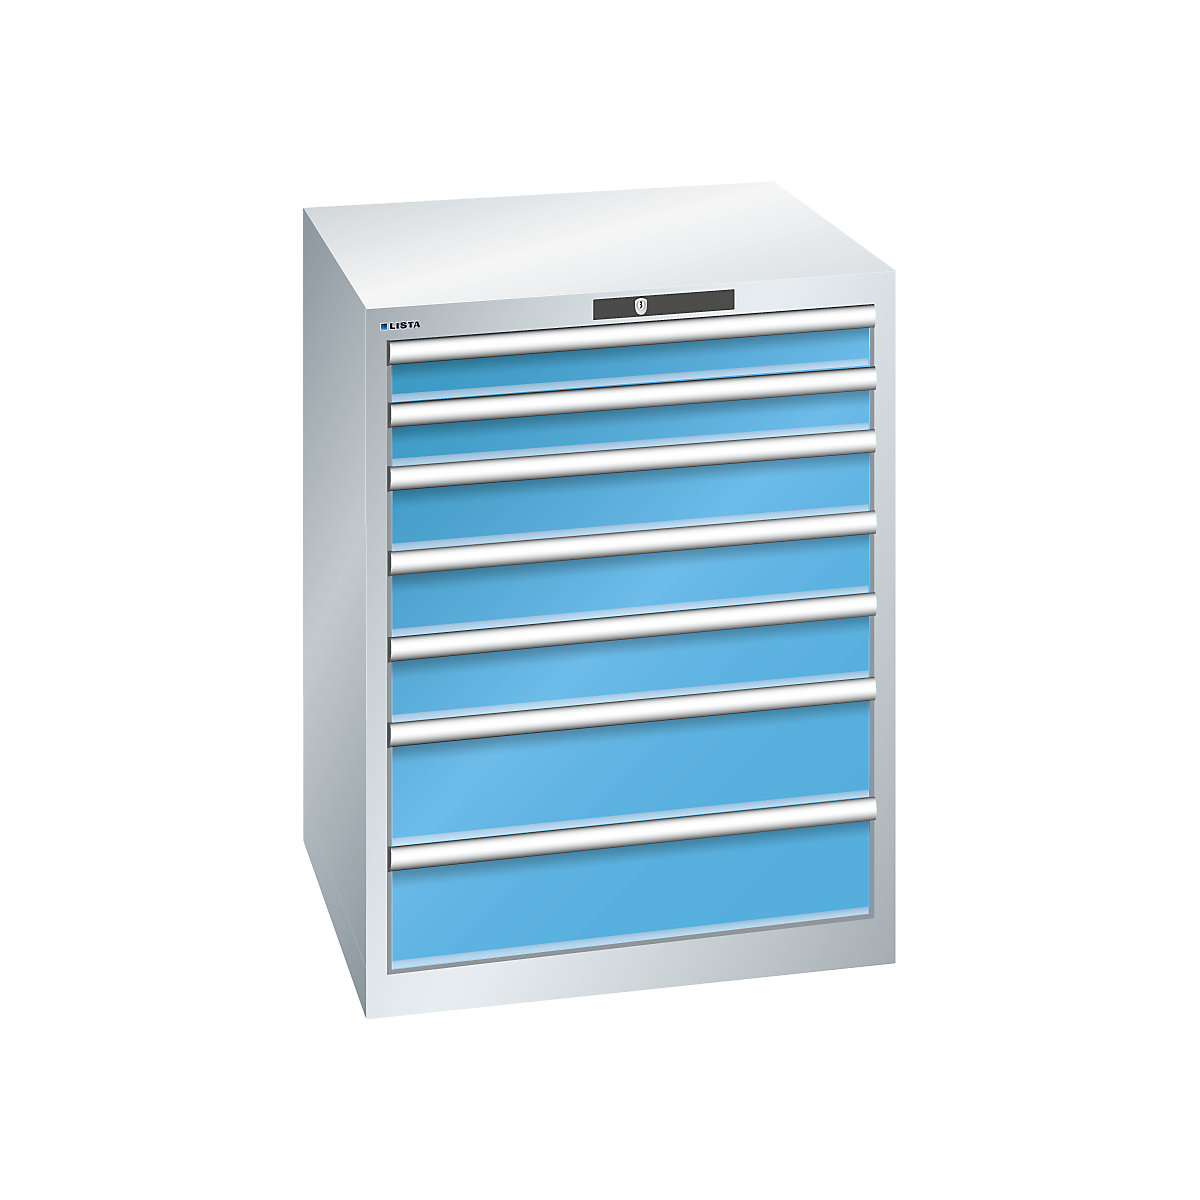 Drawer cupboard, 7 drawers – LISTA, WxDxH 717 x 725 x 850 mm, max. load 75 kg, light grey / light blue-10